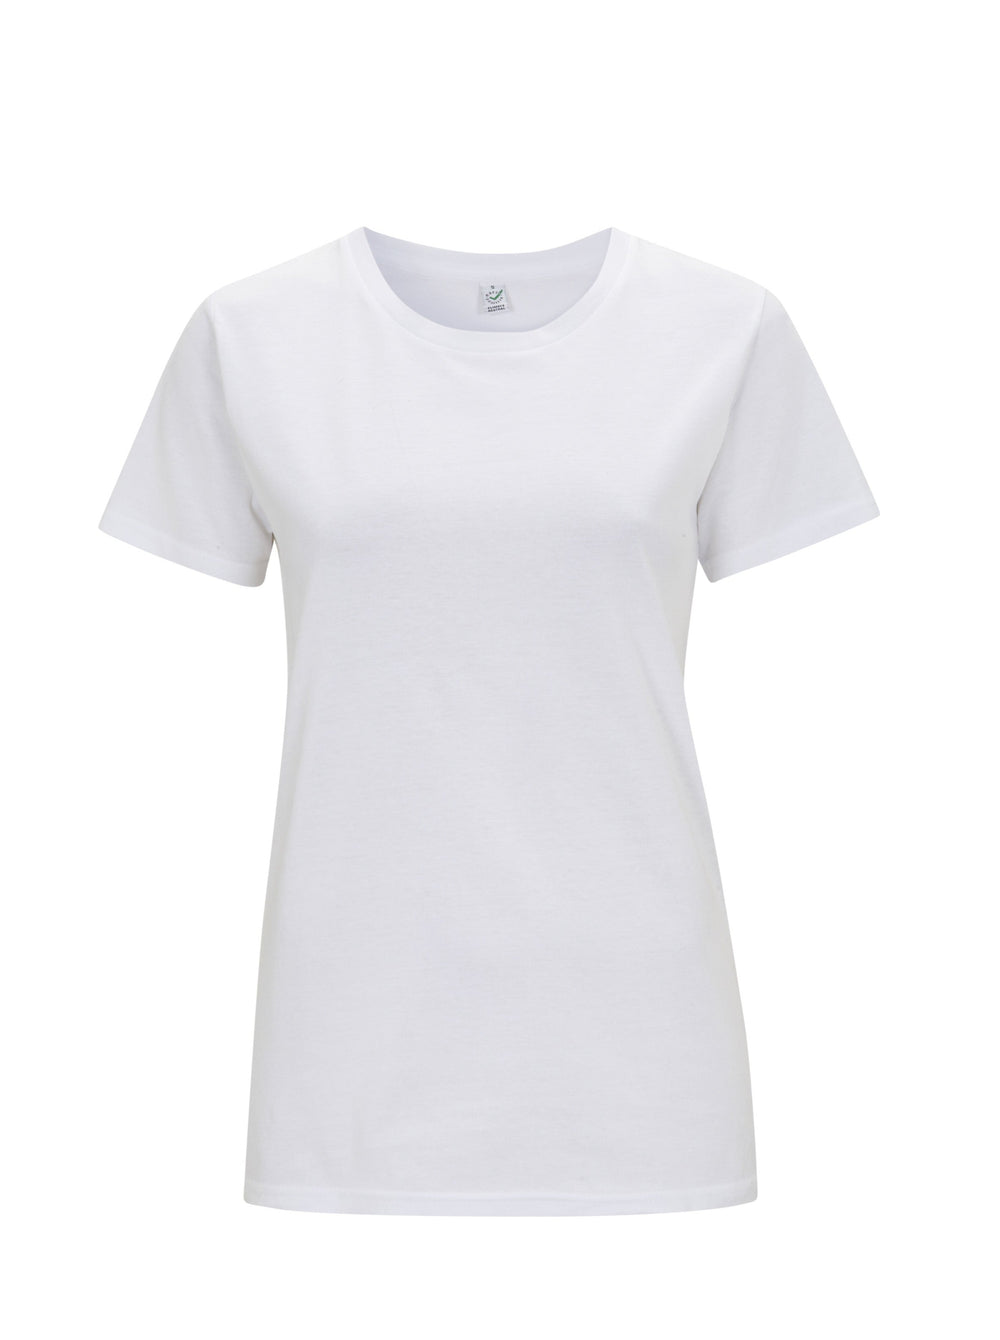 Damen Basic T-Shirt weiß